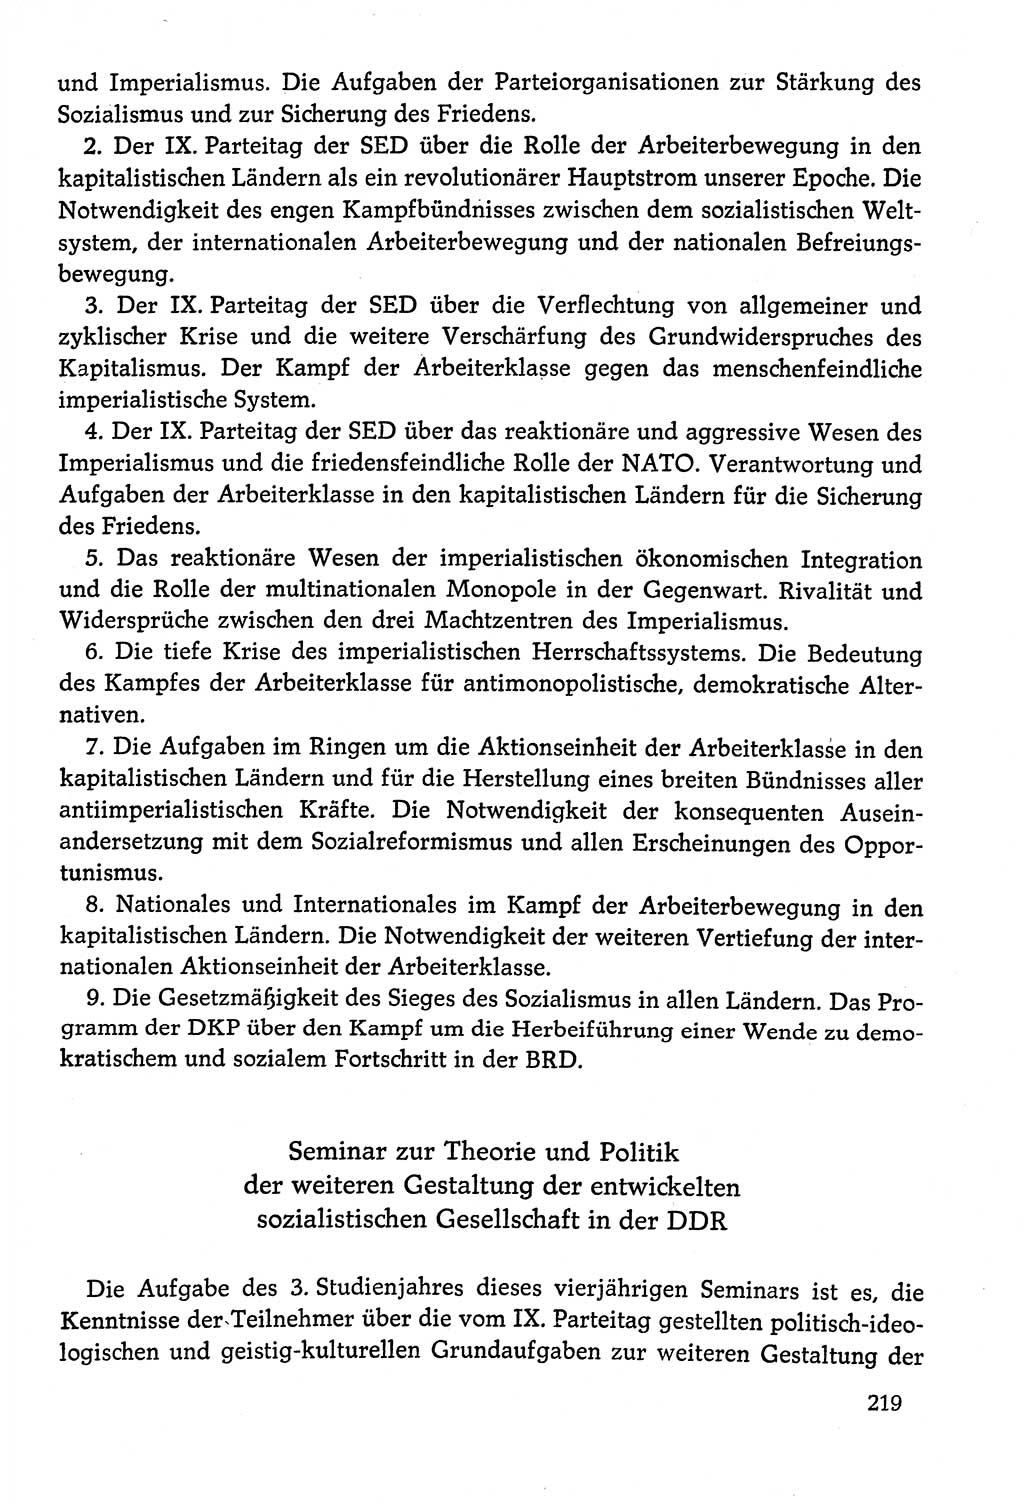 Dokumente der Sozialistischen Einheitspartei Deutschlands (SED) [Deutsche Demokratische Republik (DDR)] 1978-1979, Seite 219 (Dok. SED DDR 1978-1979, S. 219)